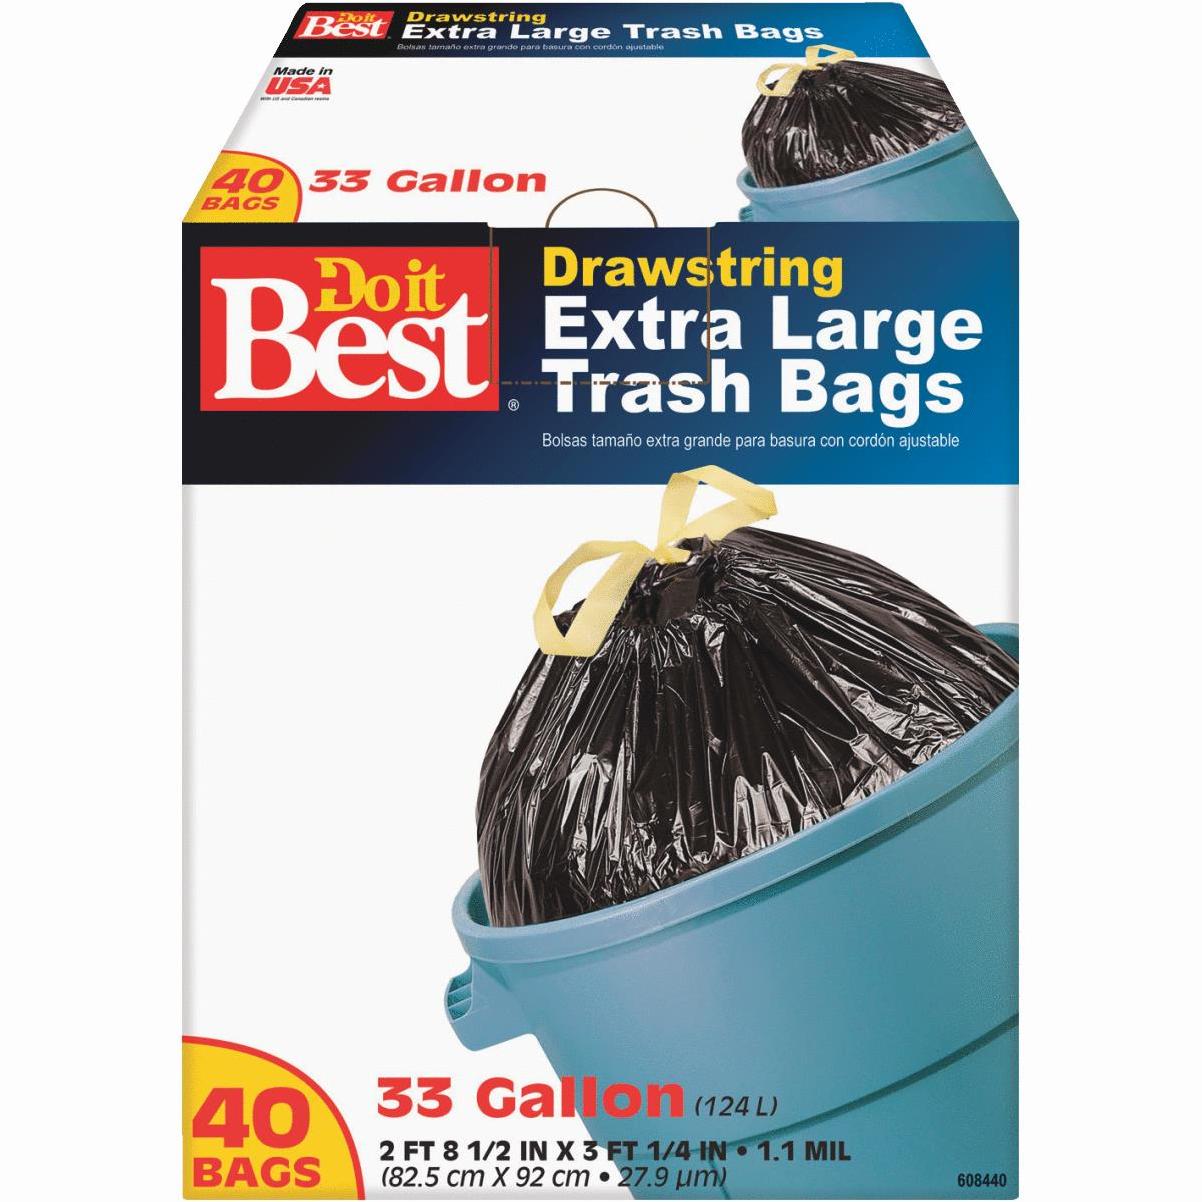 Primrose 7 Bu. Contractor Black Trash Bag (20-Count)